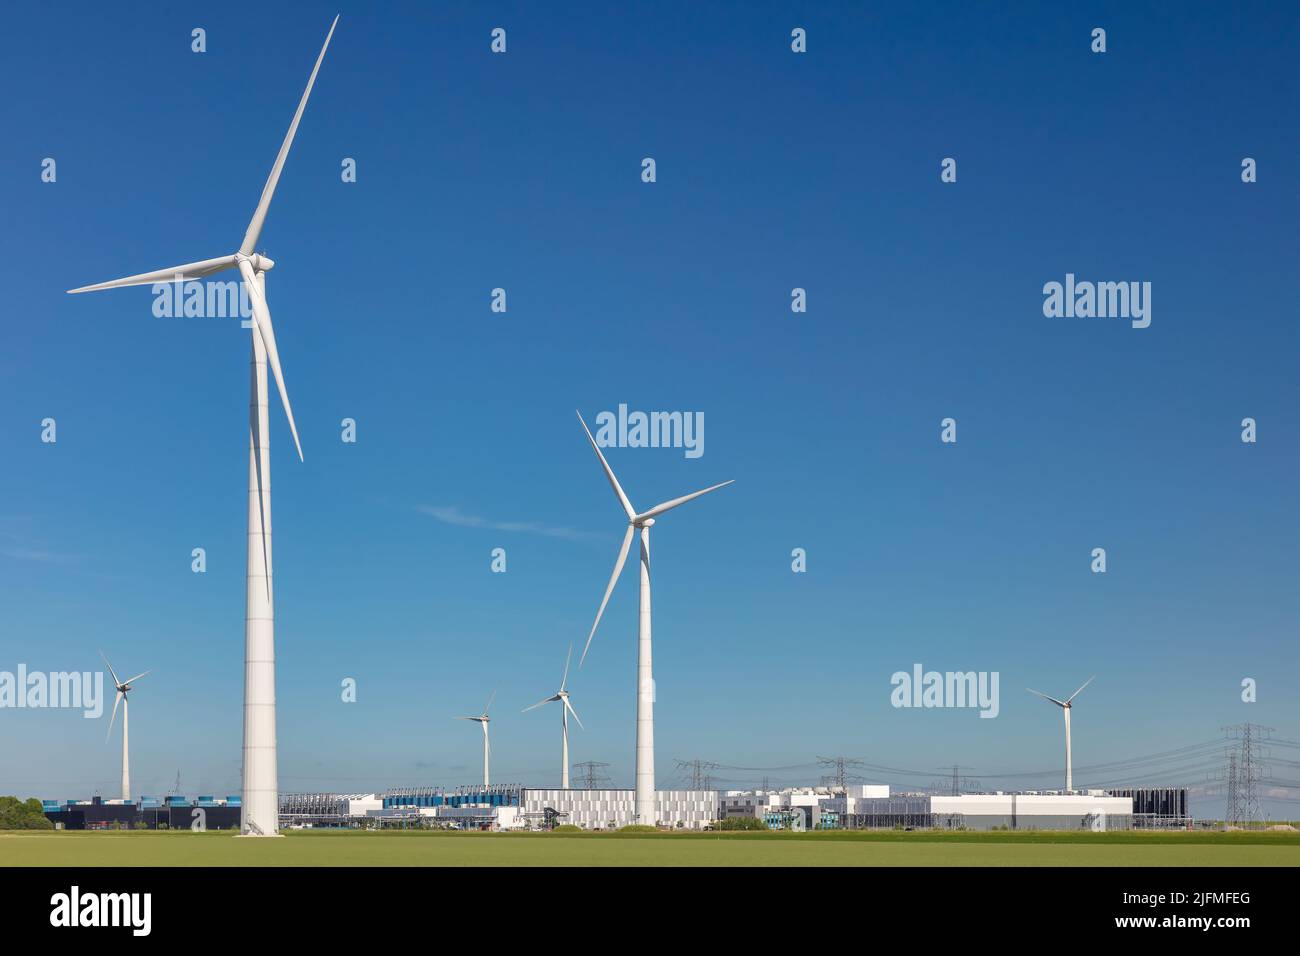 Eemshaven, Niederlande - 2. Juni 2022: Blick auf ein Google-Rechenzentrum mit umliegenden Windenergieanlagen vor einem klaren blauen Himmel in Eemshaven Stockfoto